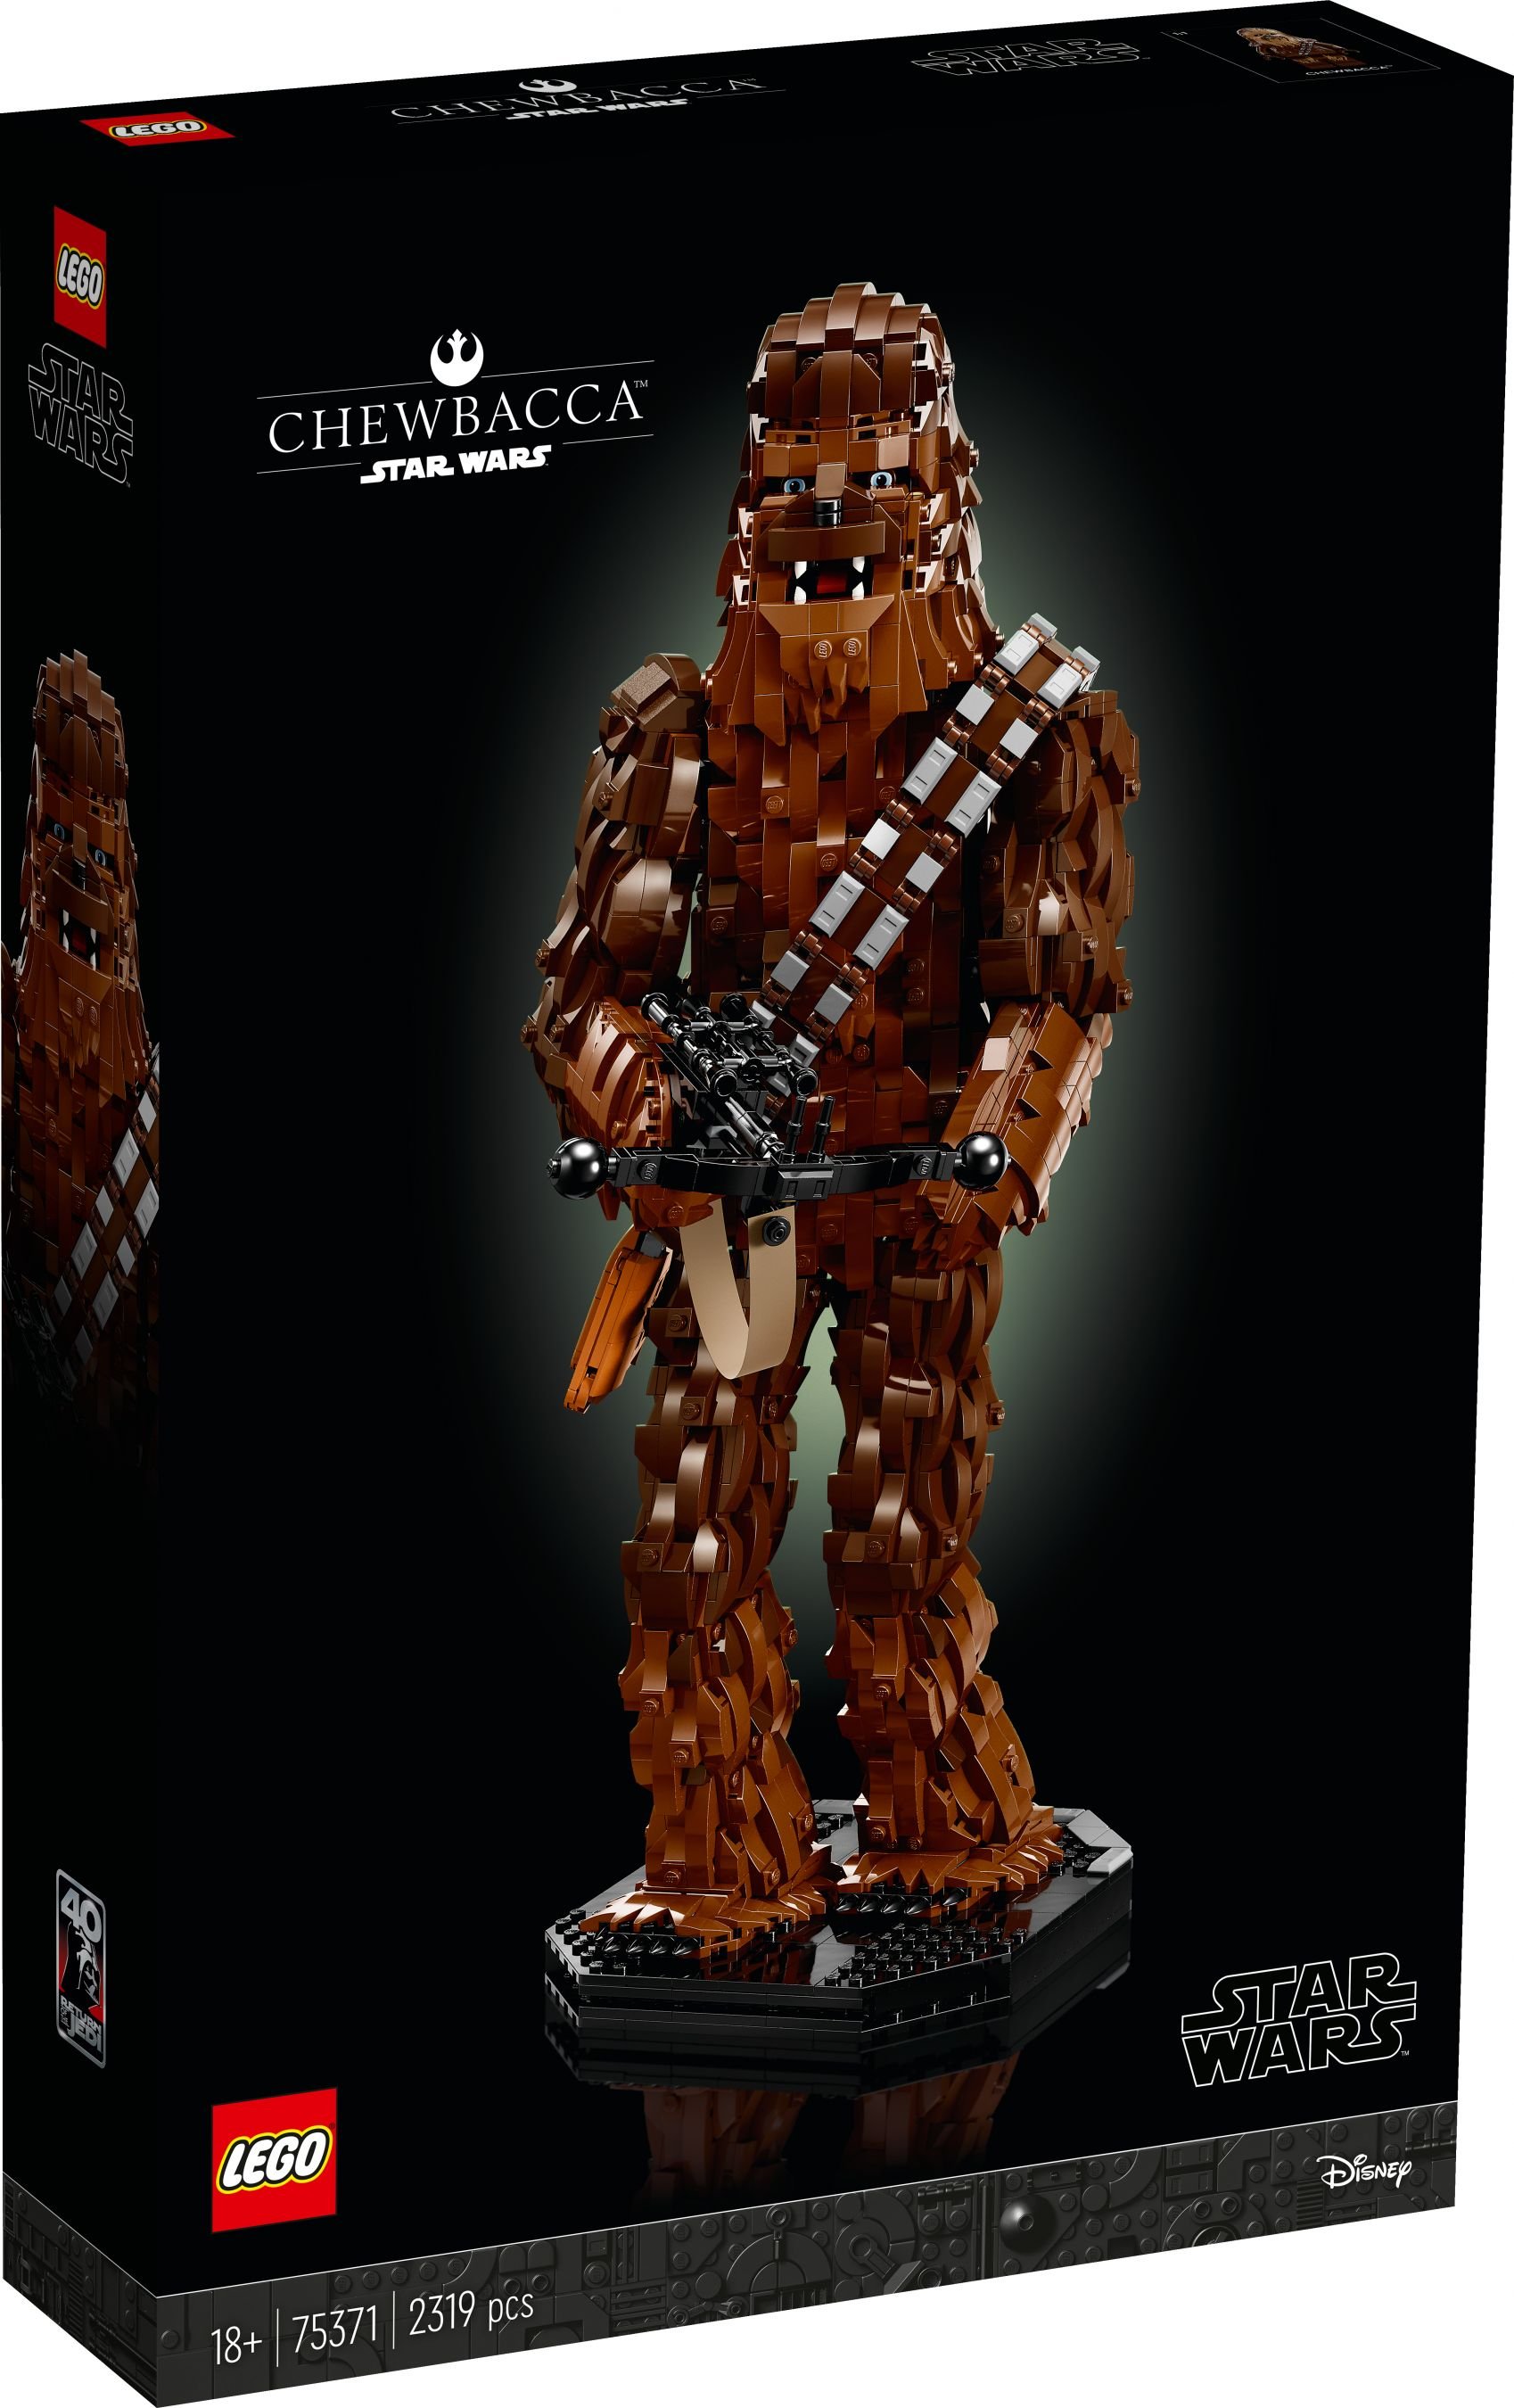 LEGO Star Wars 75371 Chewbacca LEGO_75371_Box1_v29.jpg